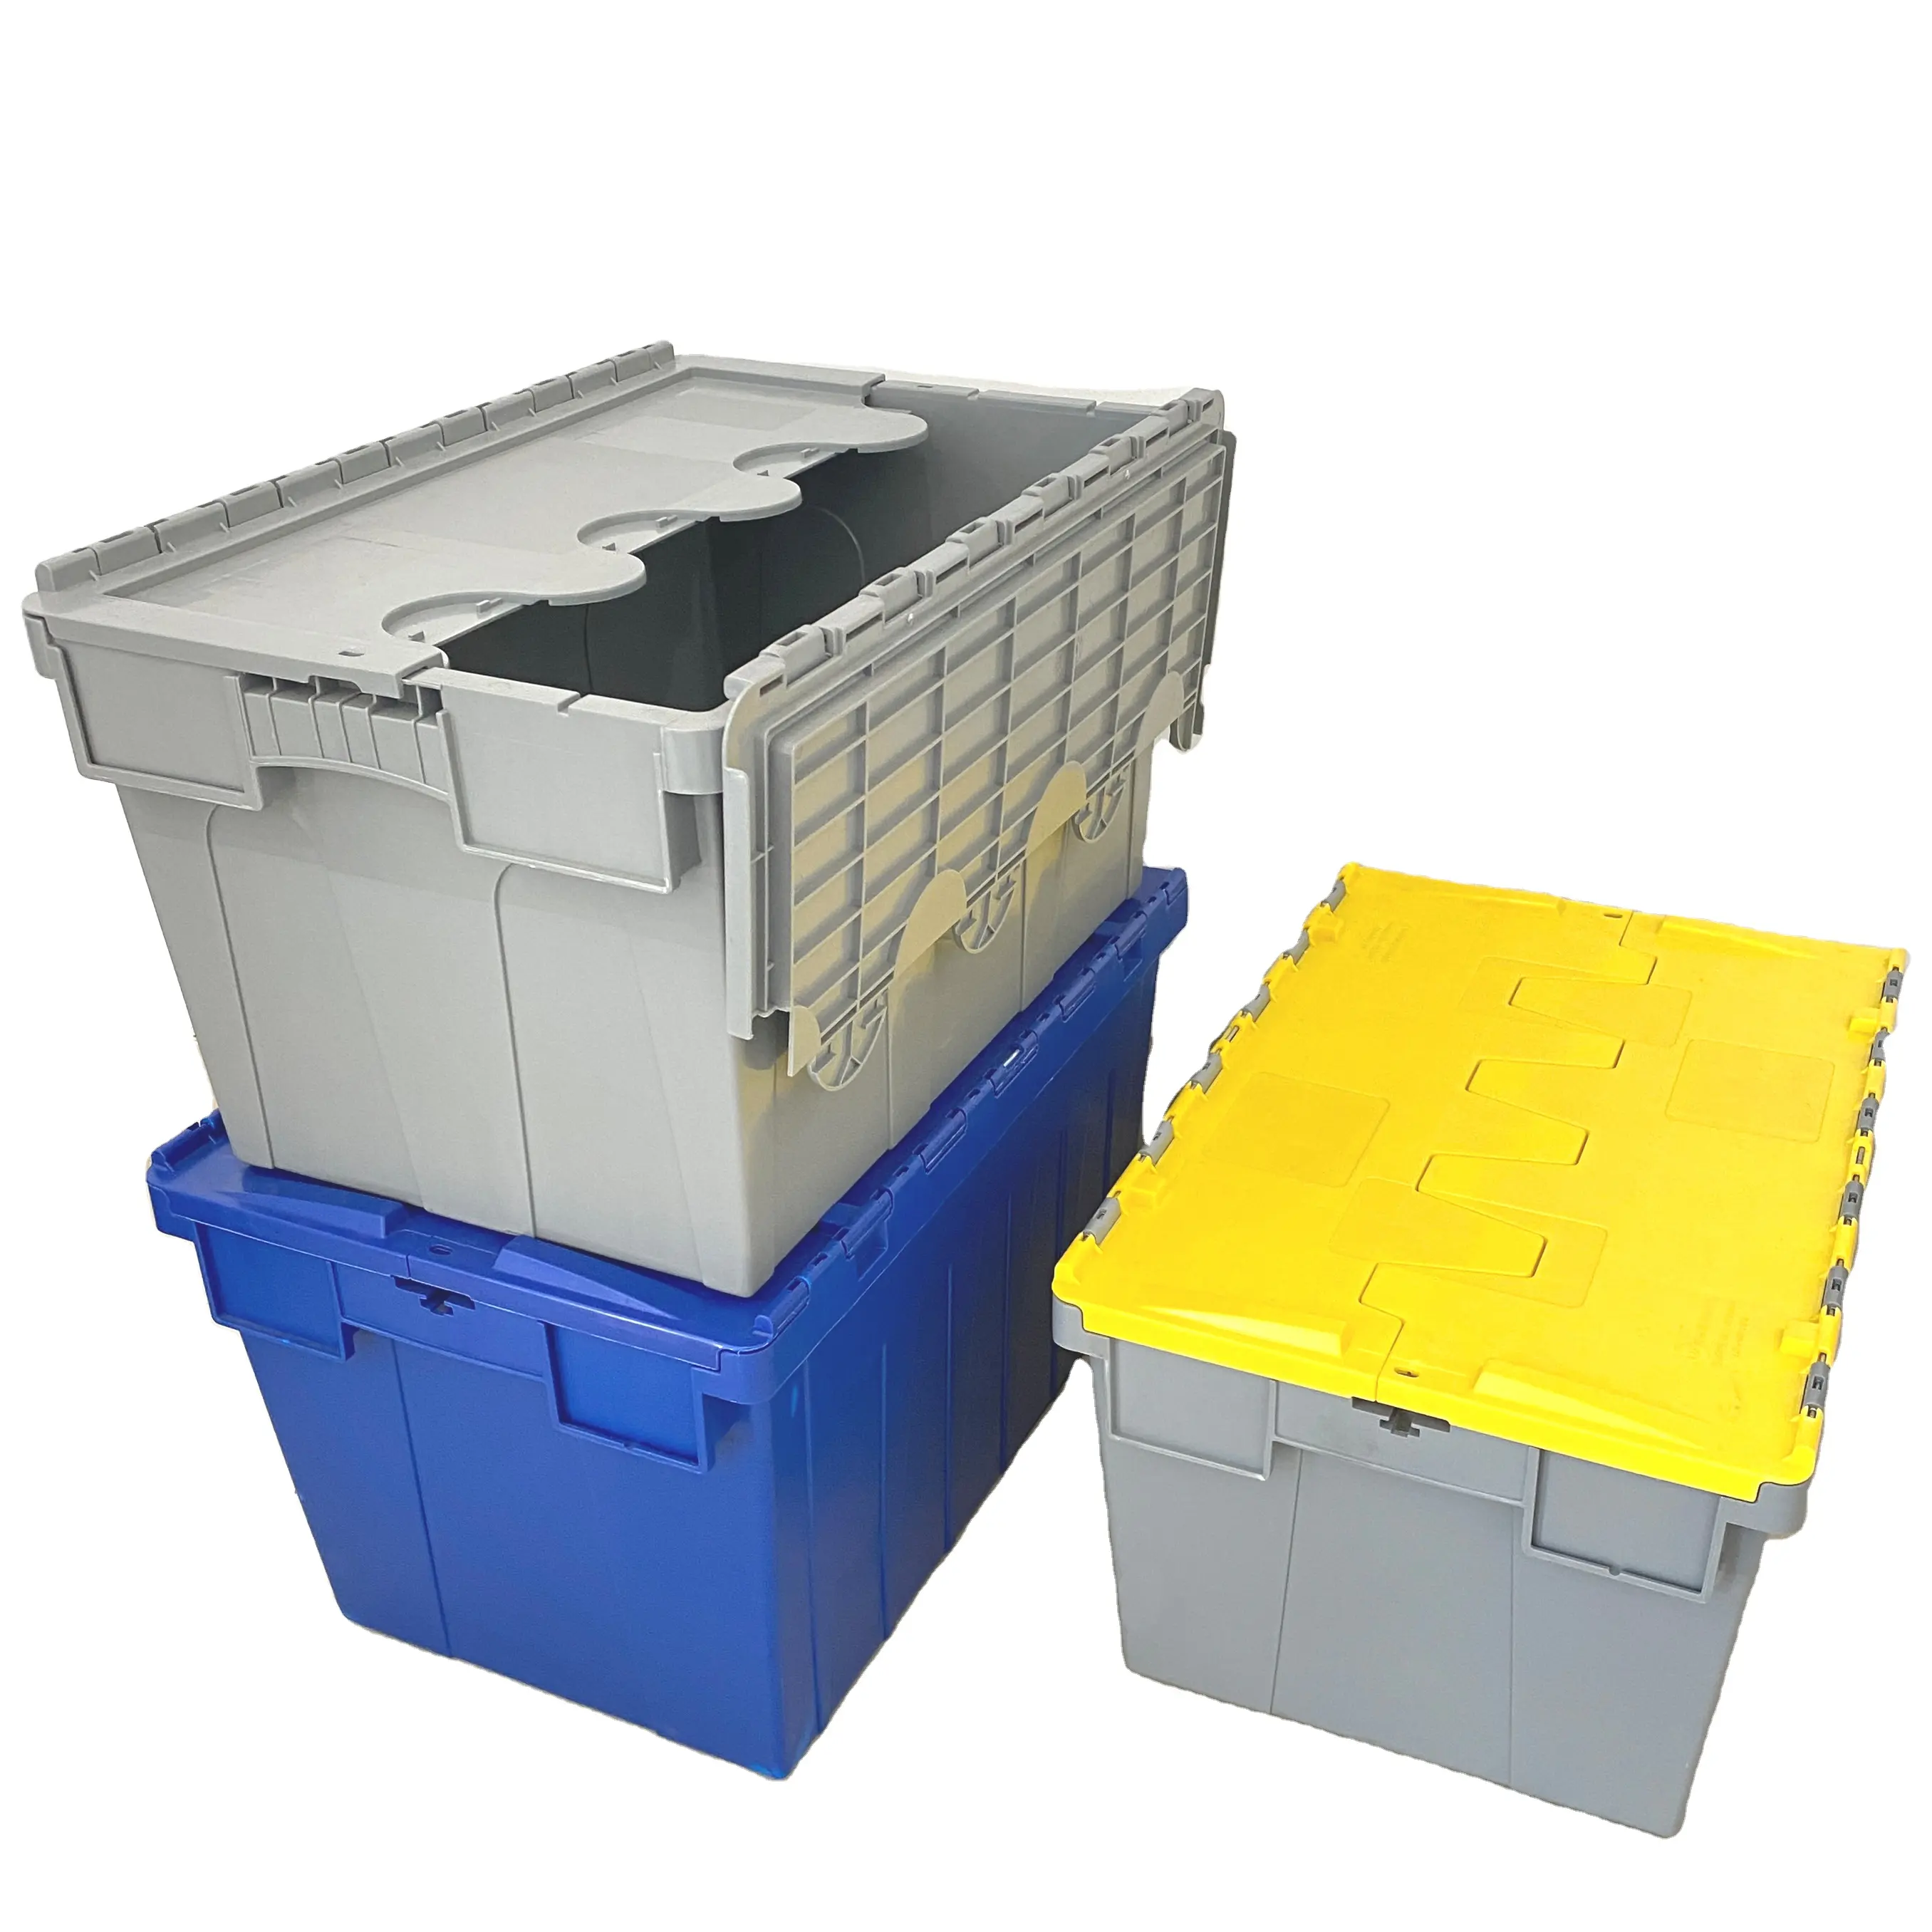 Cajas móviles de plástico de alta resistencia, contenedores apilables de almacenamiento con tapa, con tapas